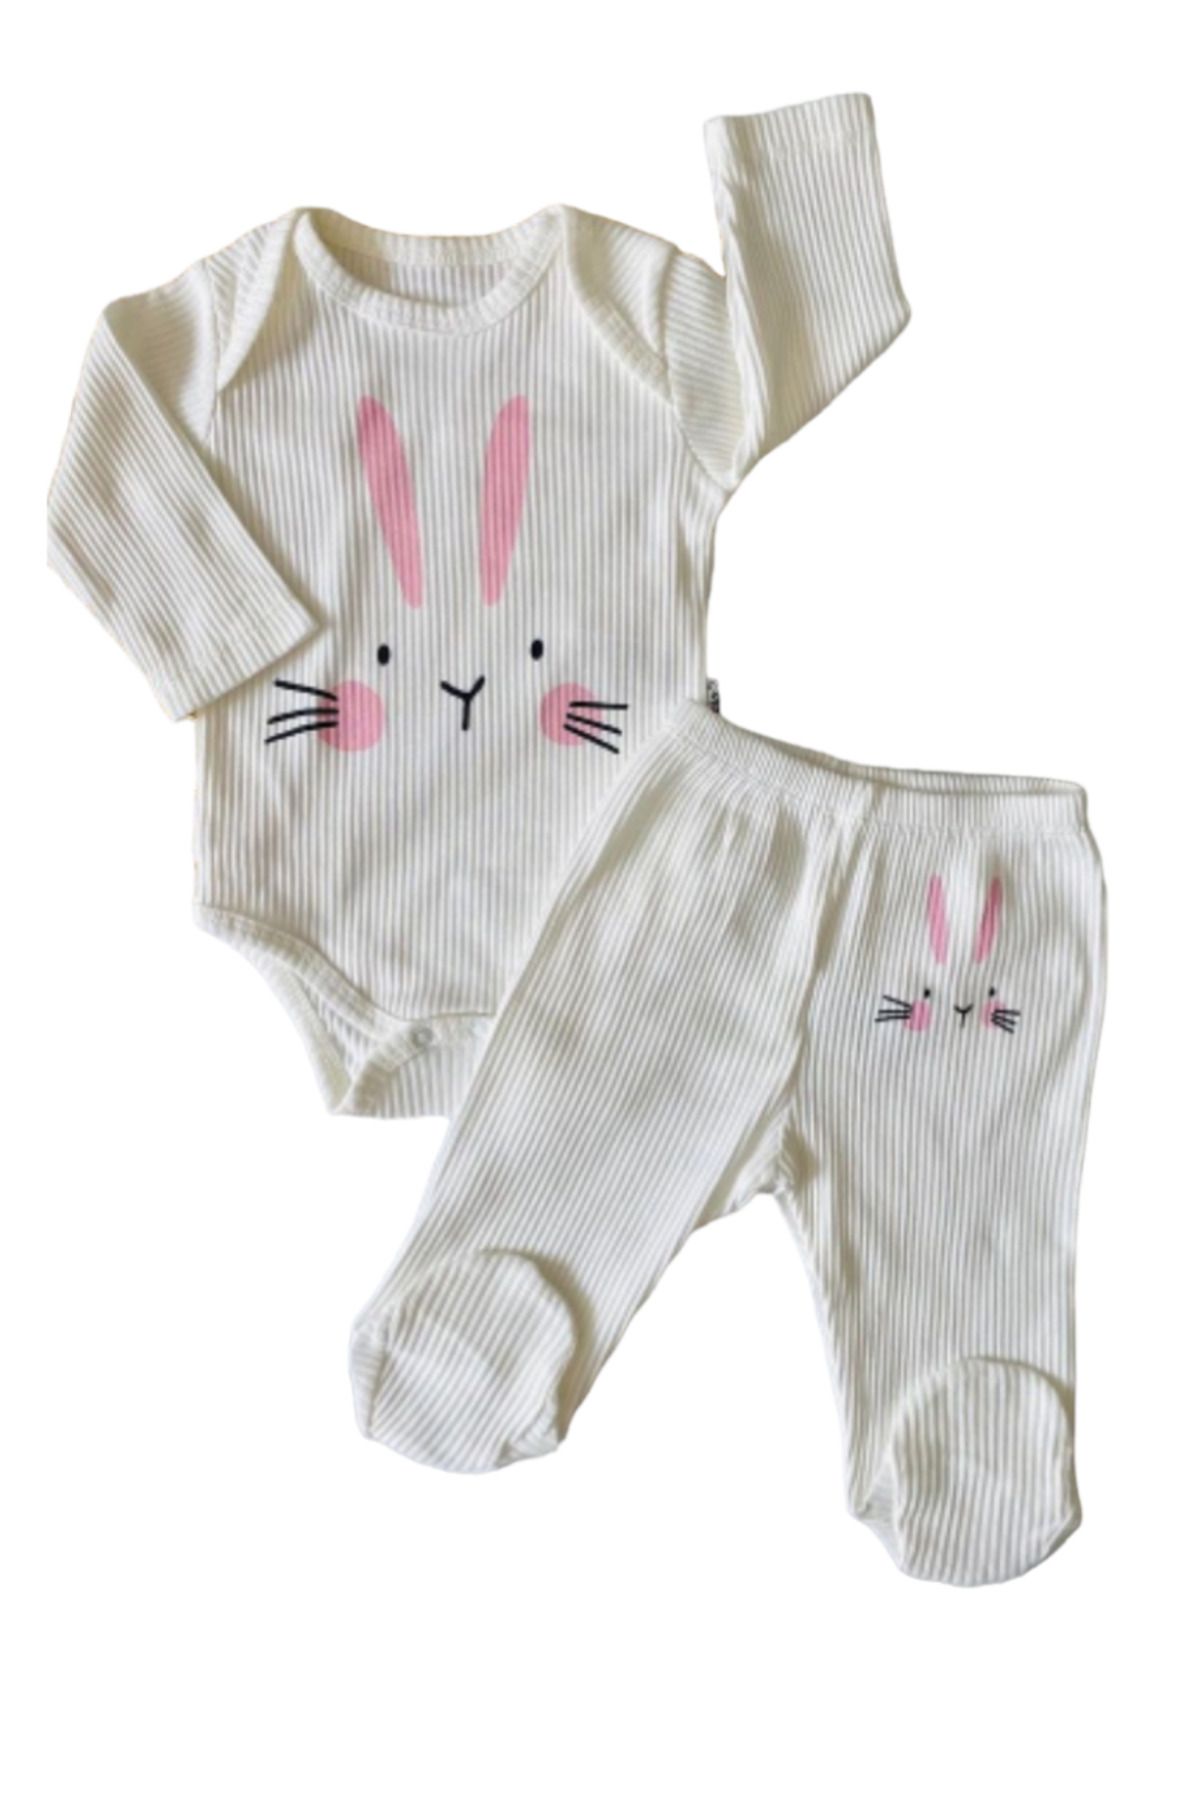 Necix's Kız Bebek Sevimli Tavşan Desenli Patikli Pantolonlu Çıtçıtlı Takım